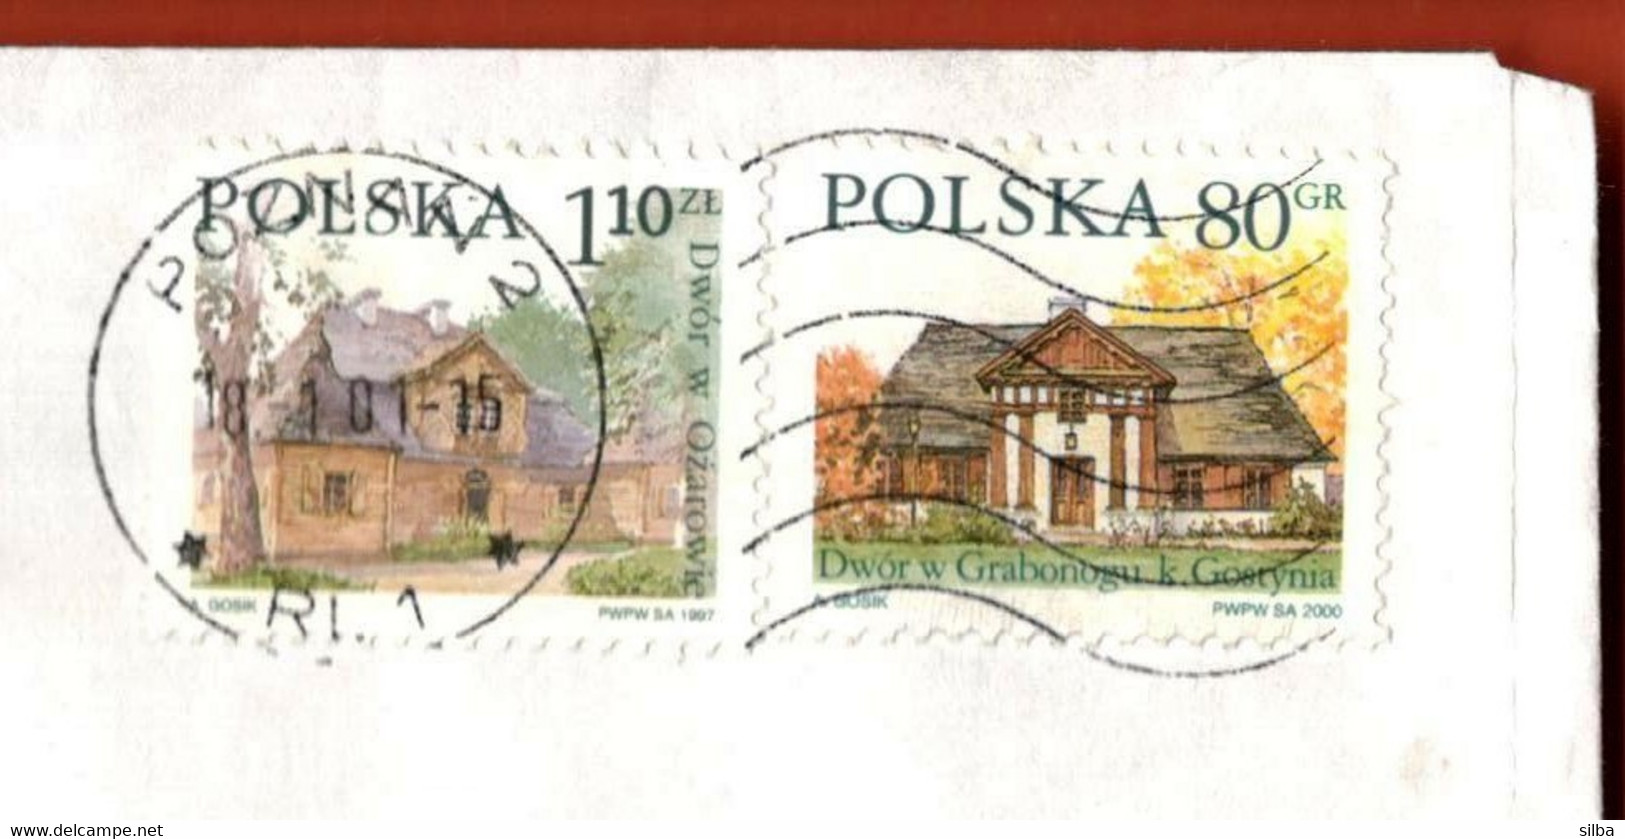 Poland Poznan 2001 / 1997 Farm House Ozarow 1.10 ZL, 2000 Grabonog 80 Gr - Cartas & Documentos